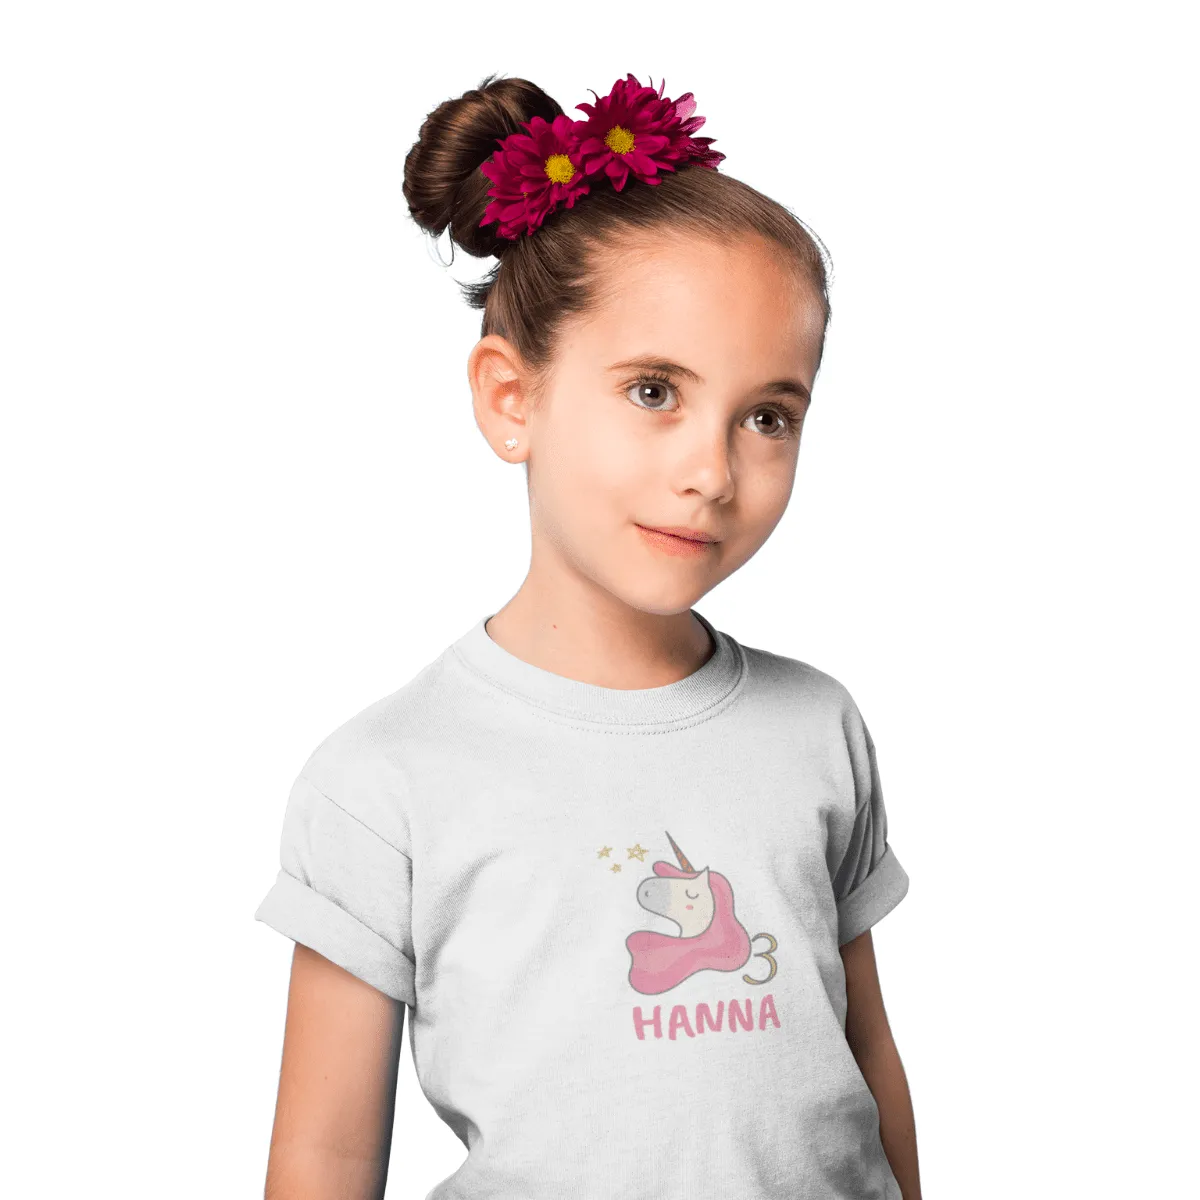 Kinder T-Shirt 3. Geburtstag mit Wunschname und Alter | Design Einhorn | Personalisiert | Kinder Geschenk Ich Bin jetzt 3 | Baumwolle - Fair Trade | Kurzarm | Weiß